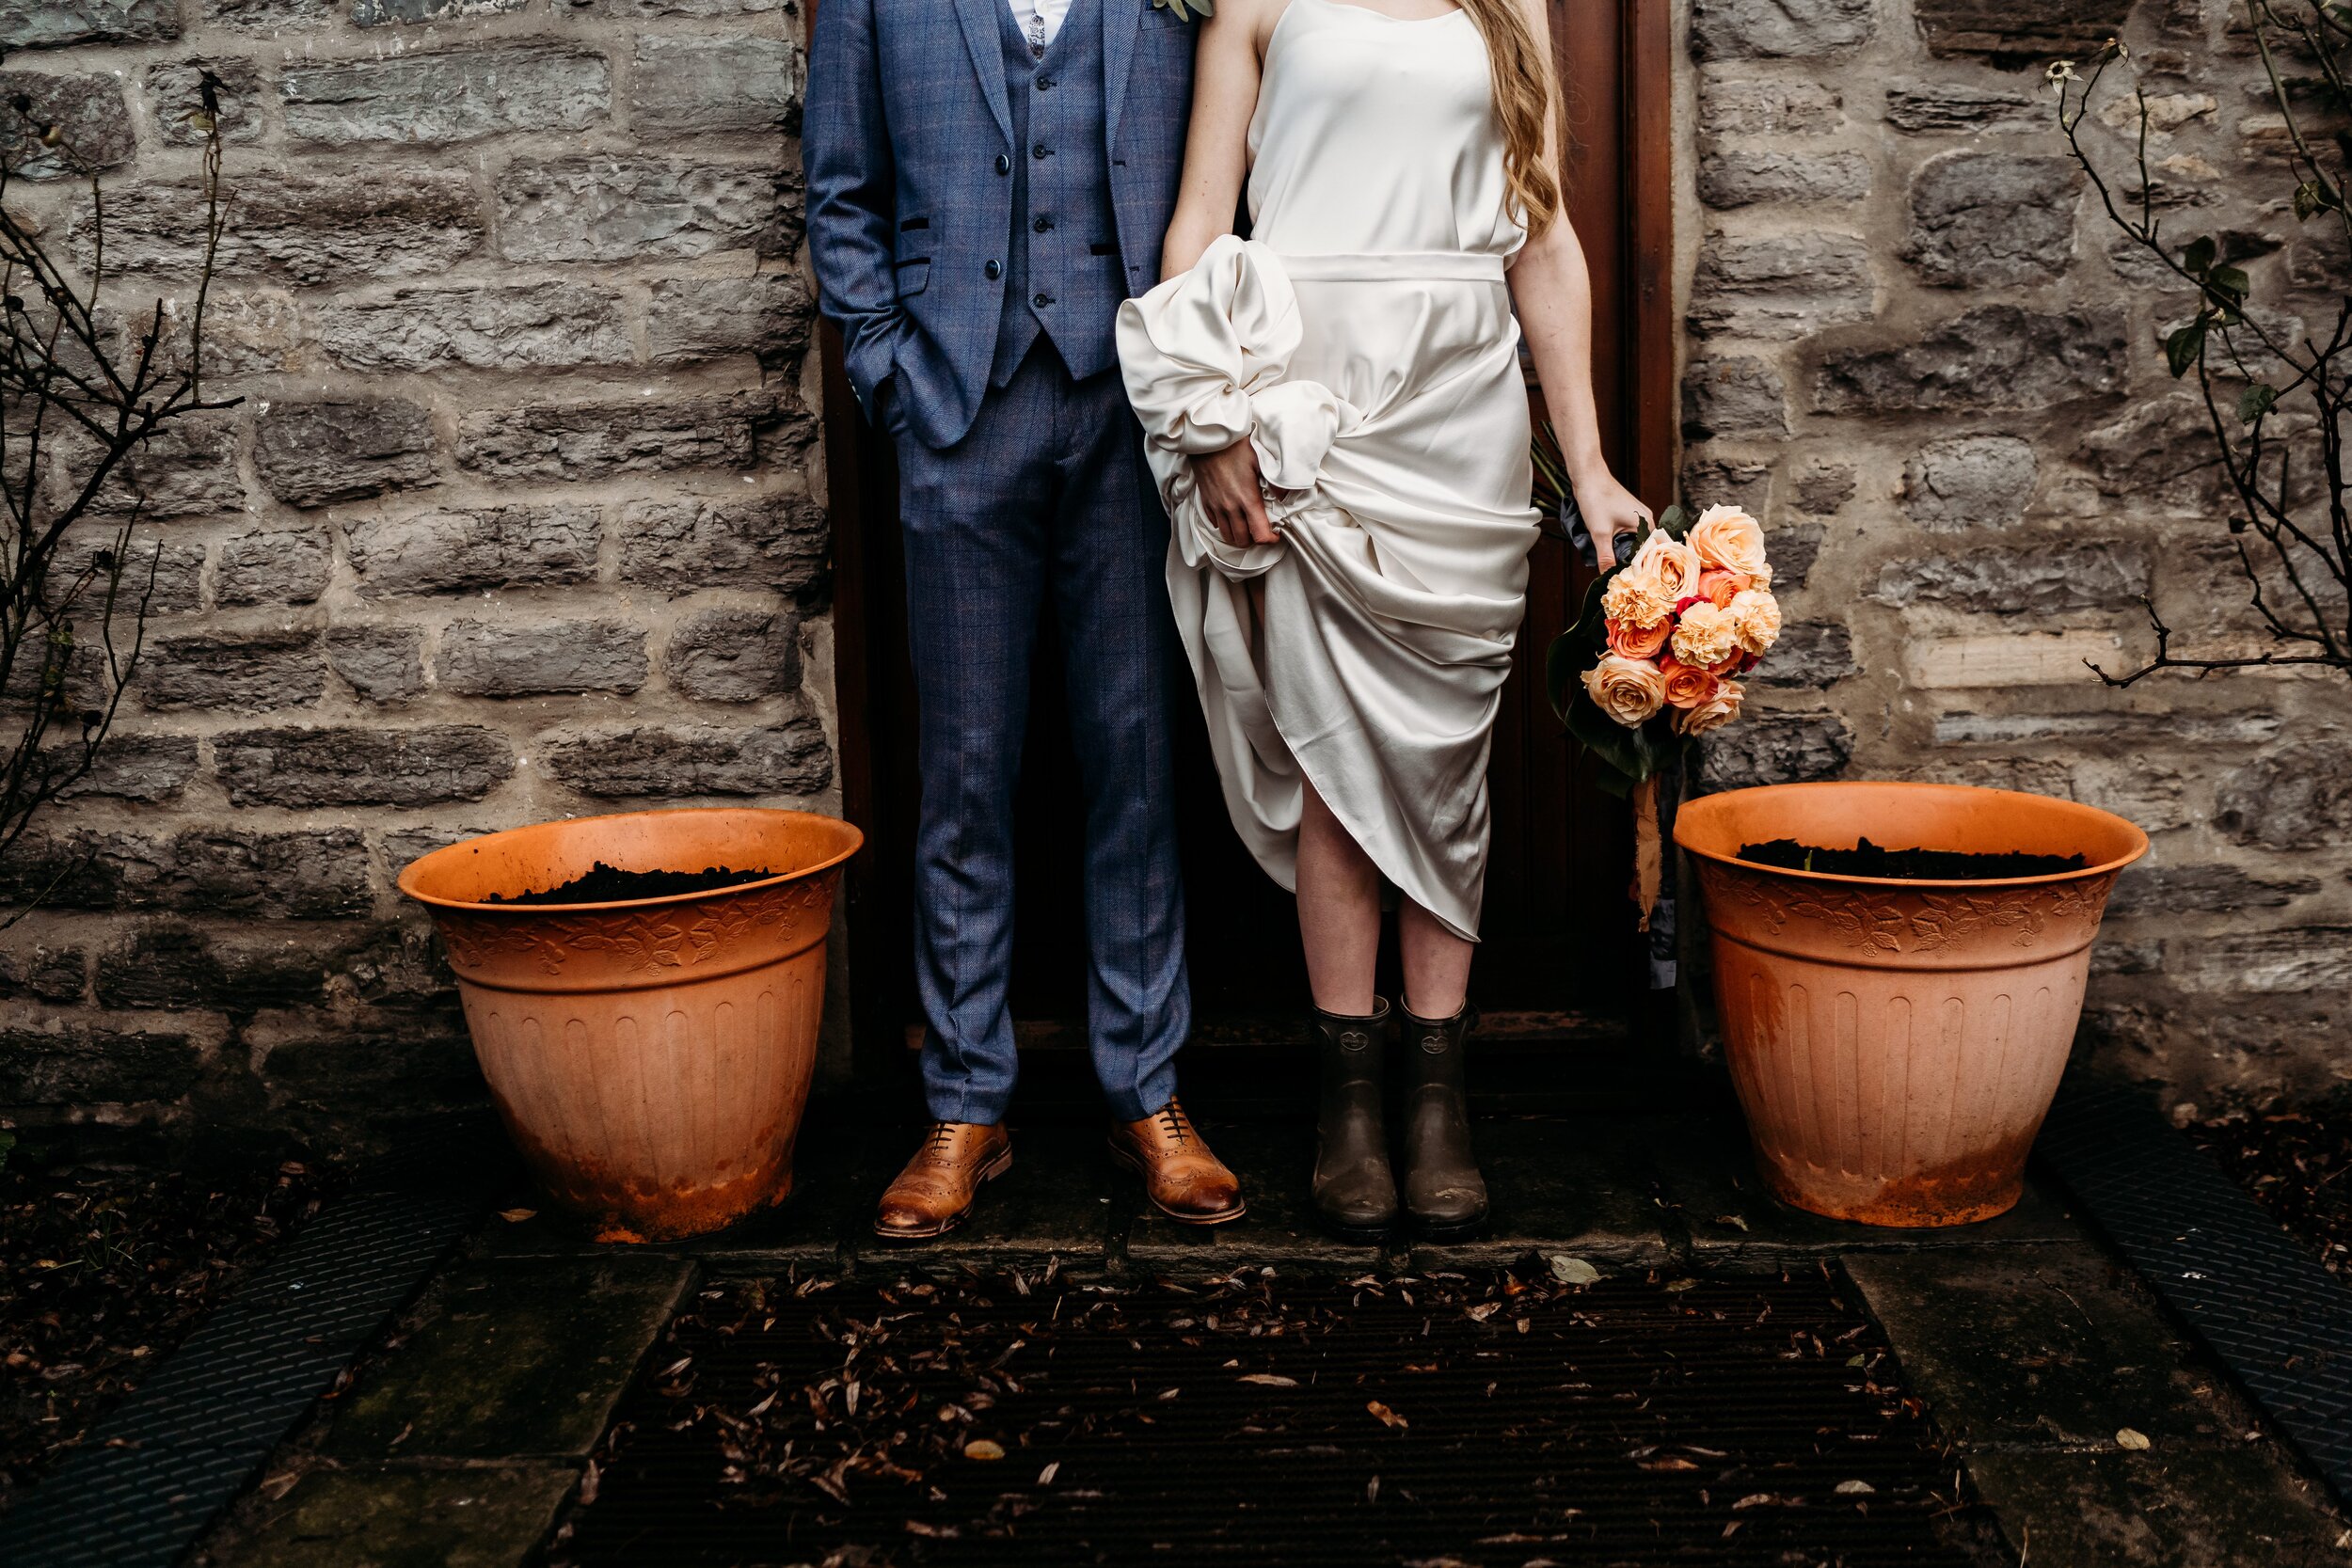 haycroft-leeshawilliamsphoto-farm-wedding-rustic-119.jpg